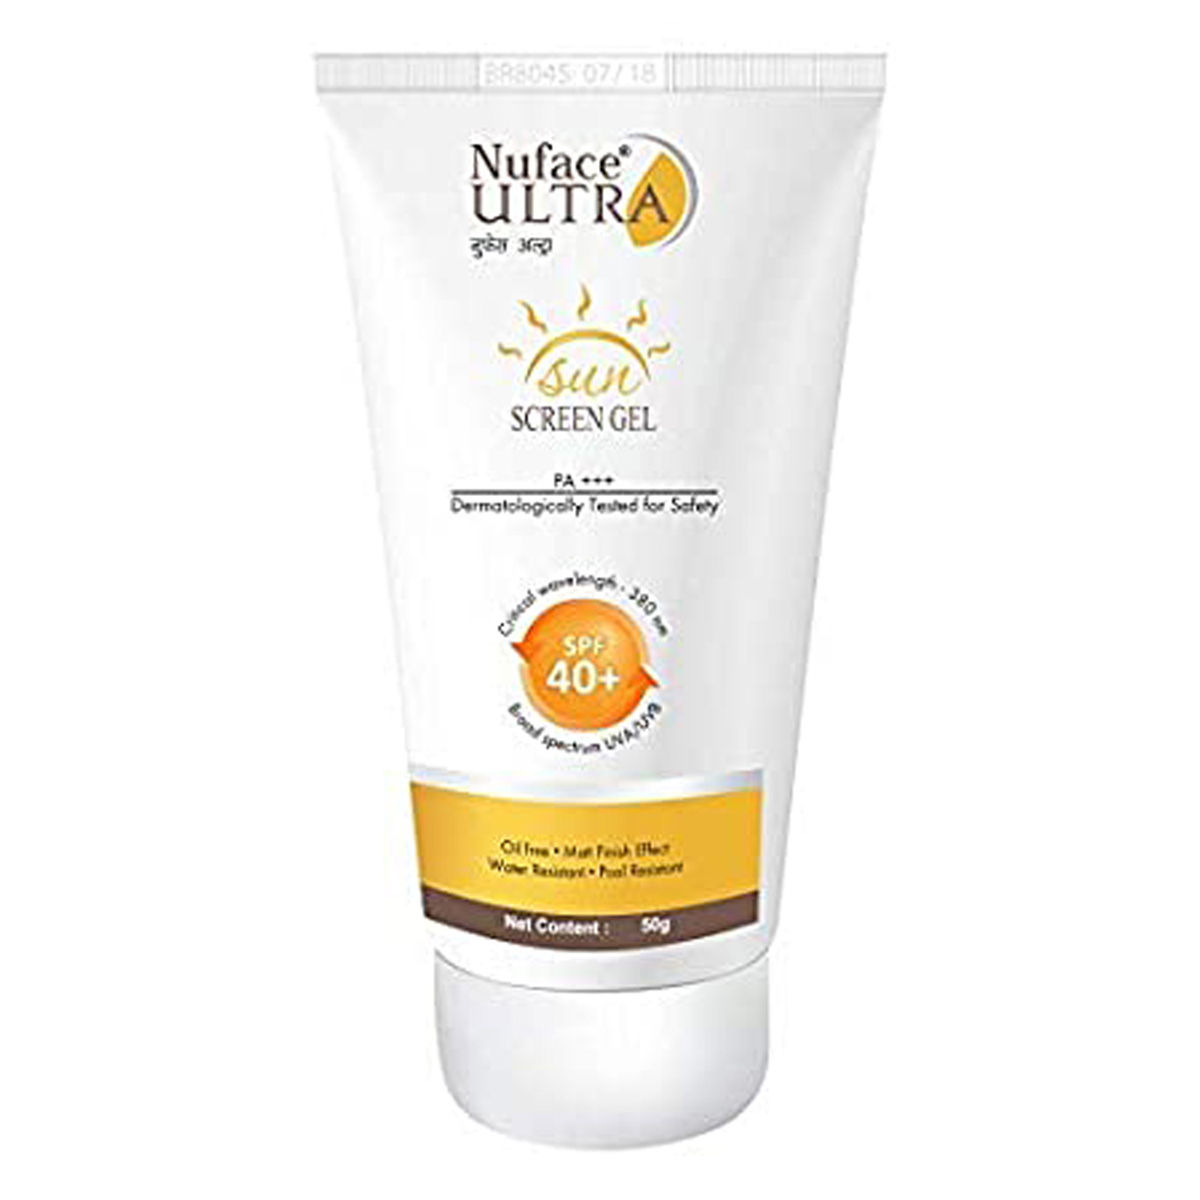 Buy Nuface Ultra Sunscreen Gel, 50 gm Online